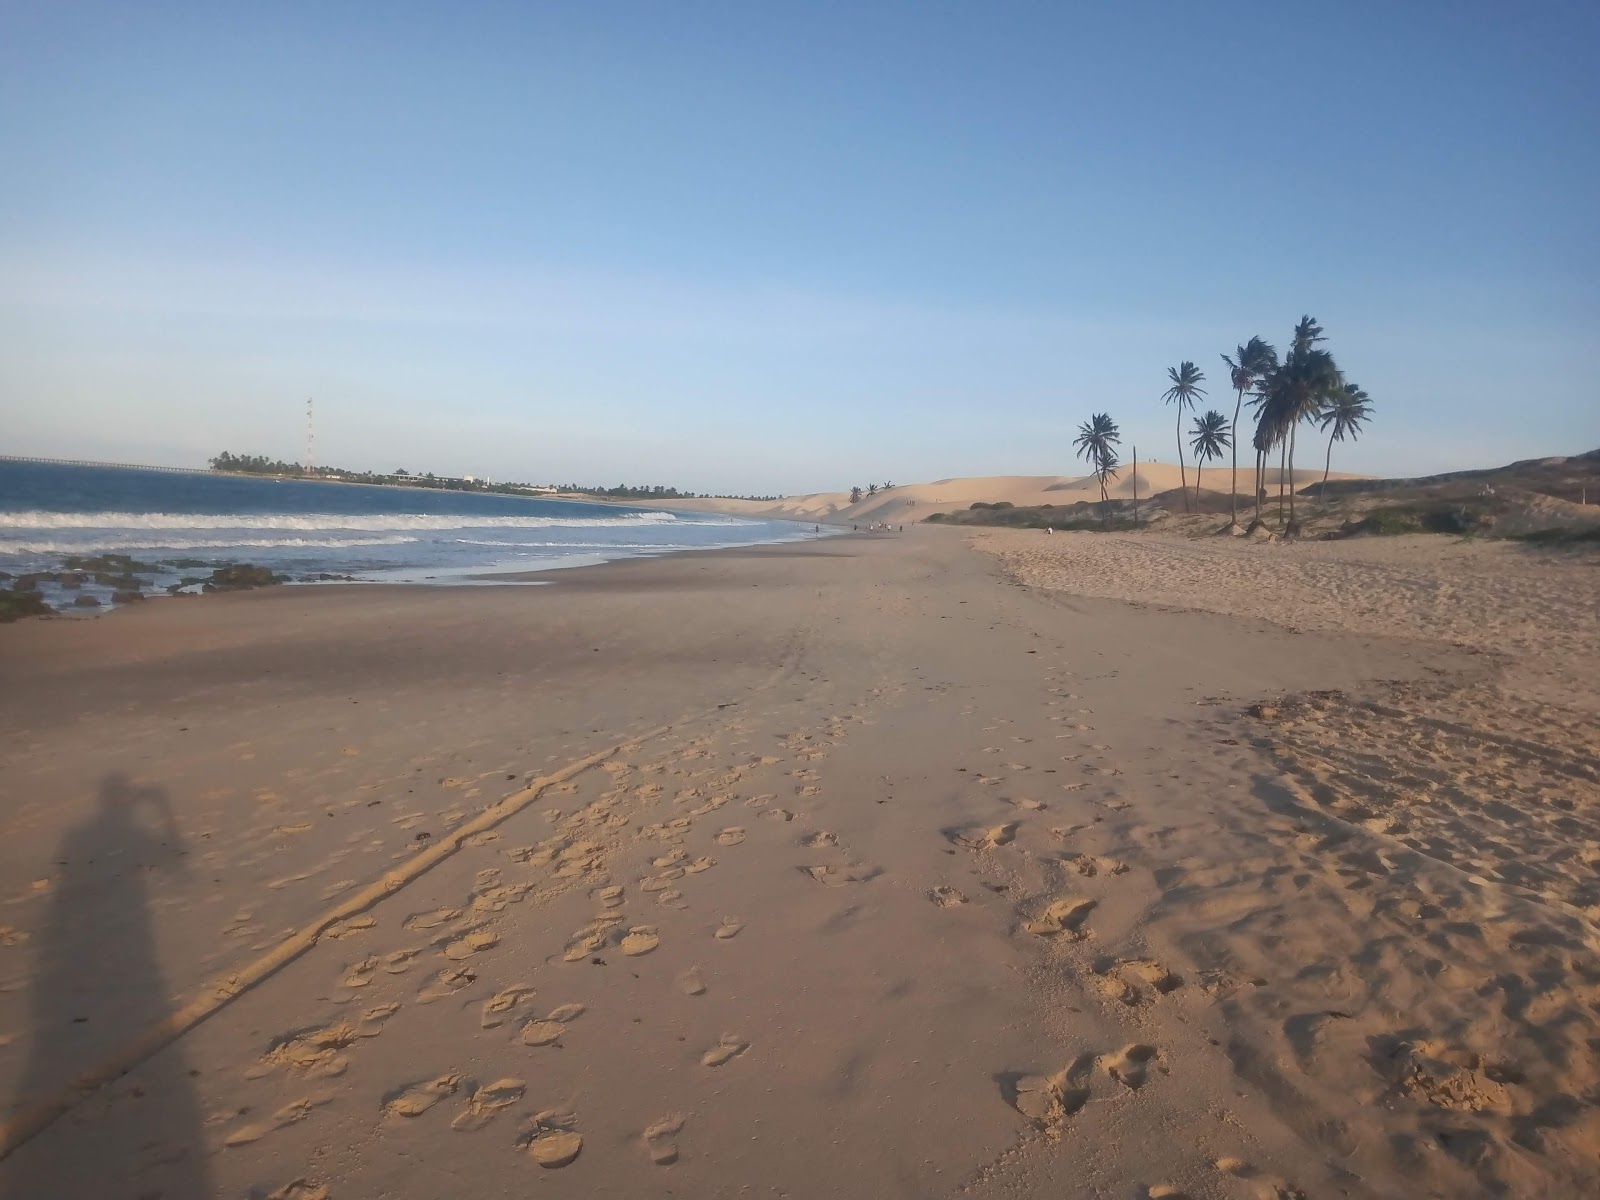 Praia Das Almas.'in fotoğrafı parlak ince kum yüzey ile